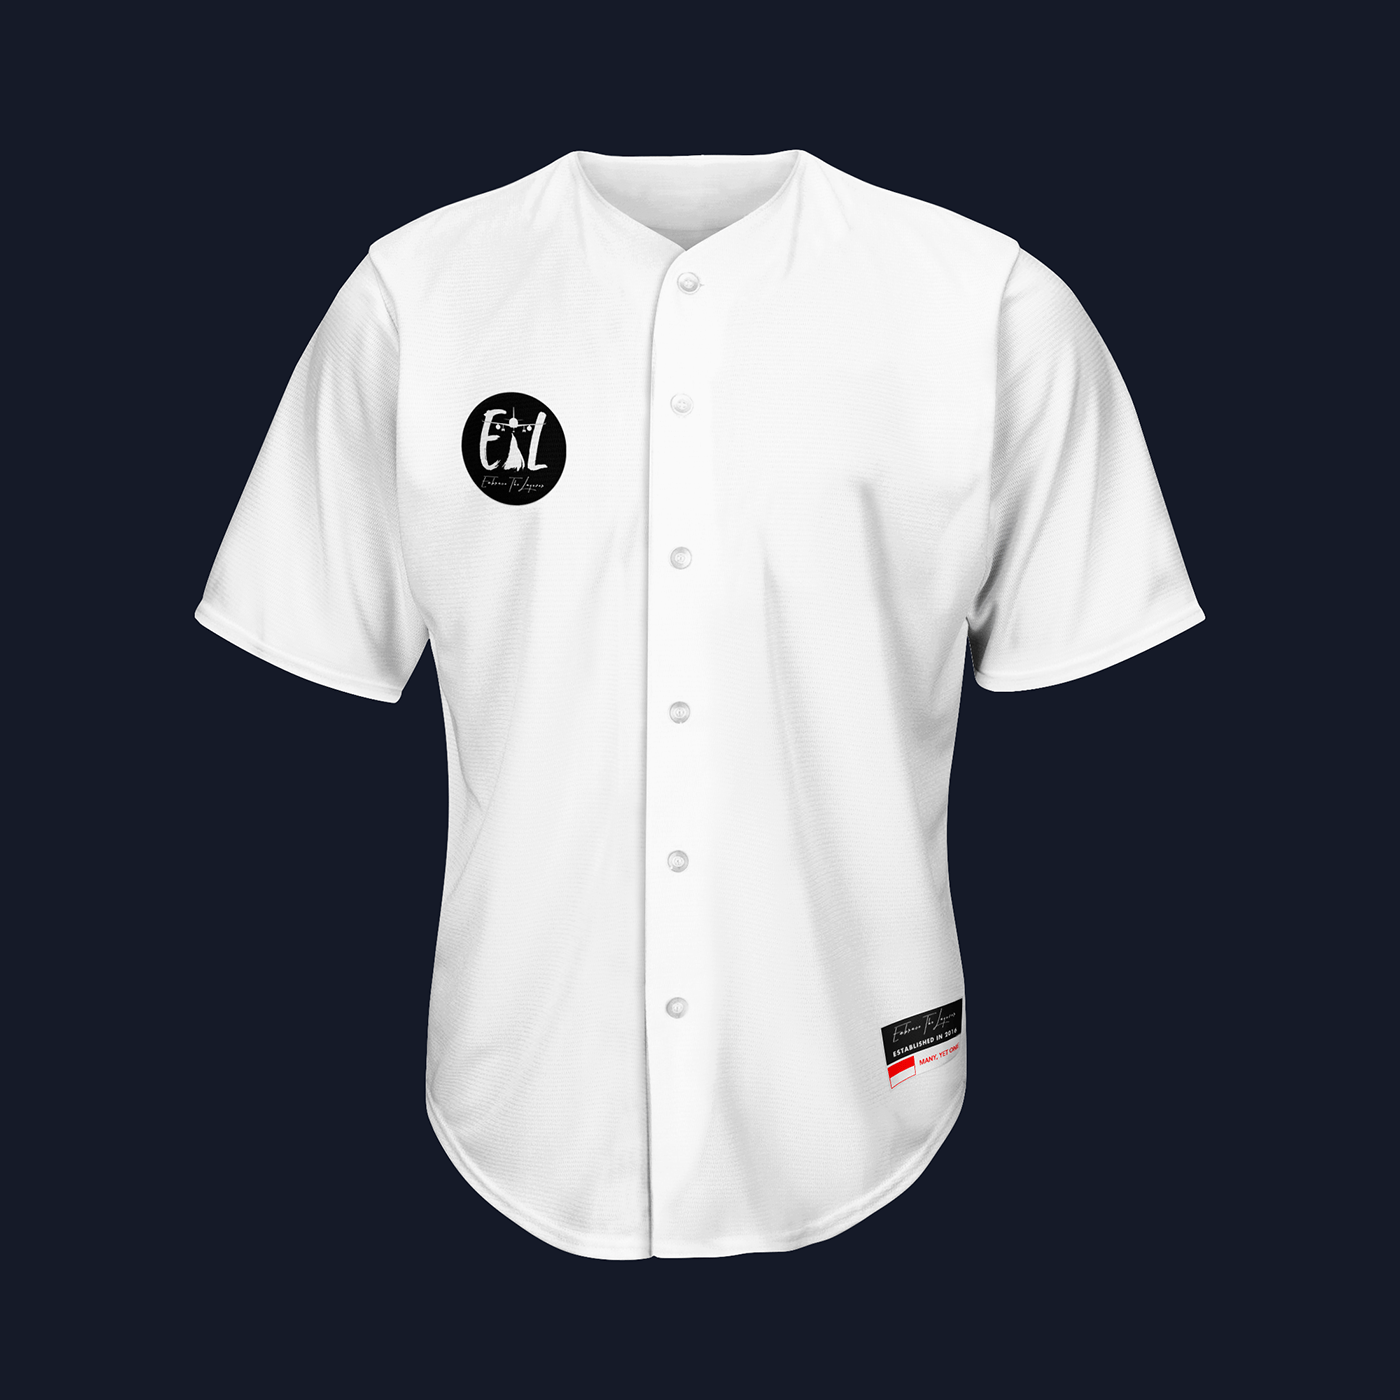 Jersey Design T-Shirt Design